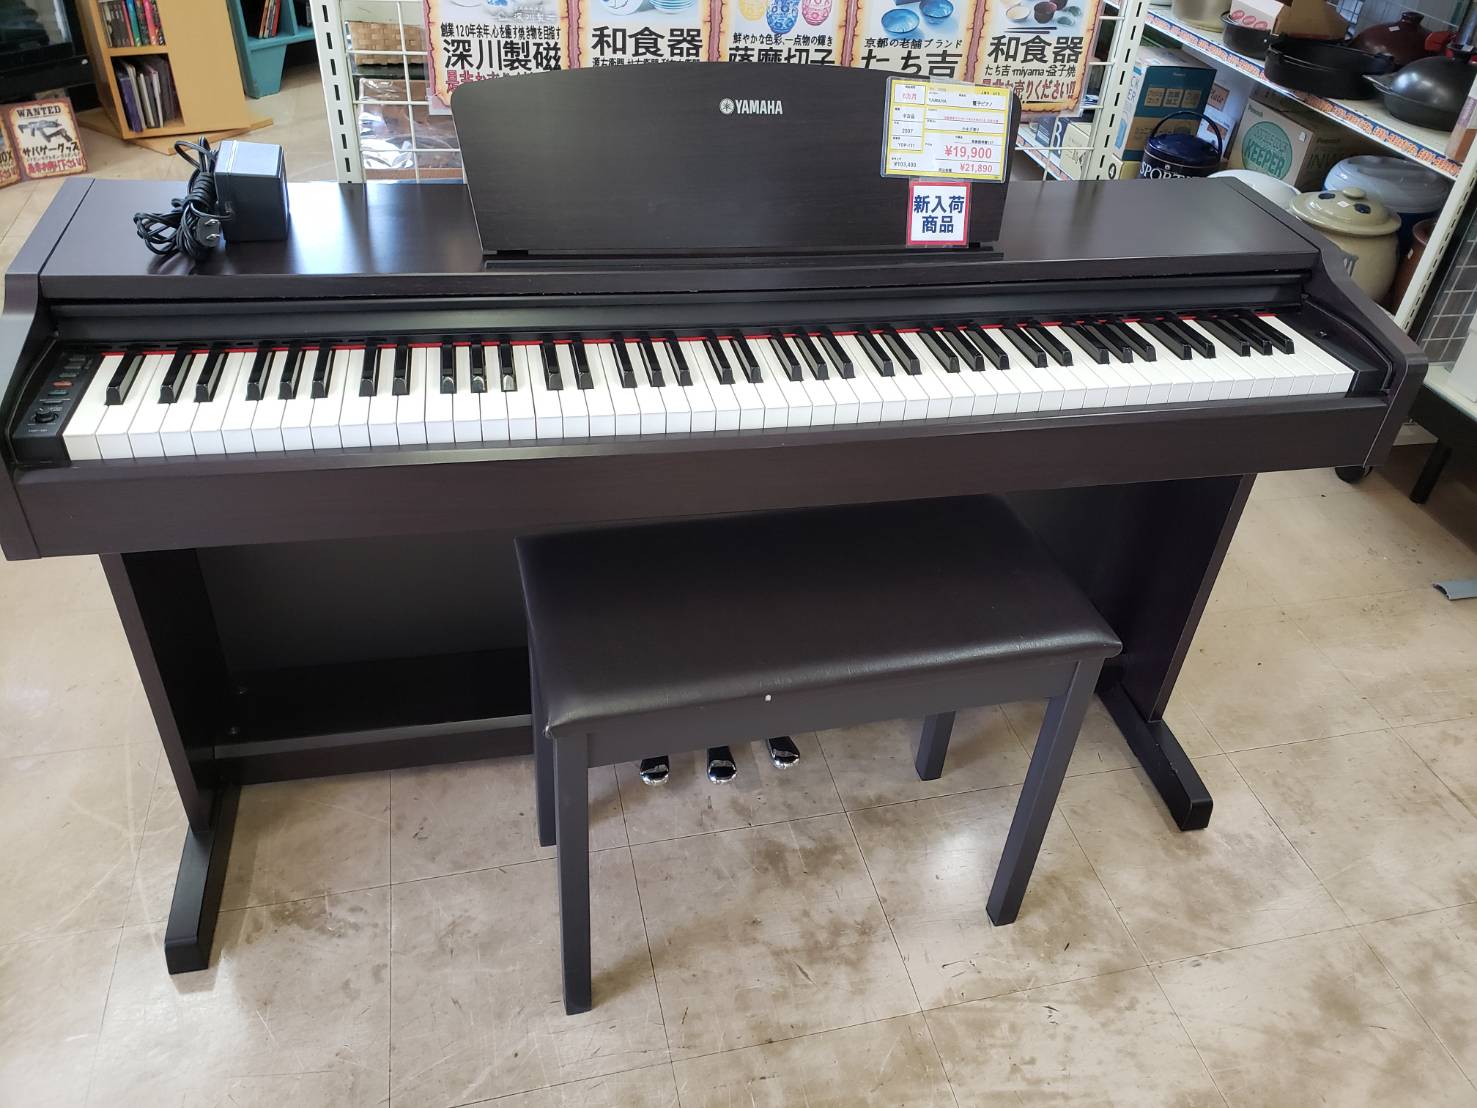 YAMAHA　ヤマハ　電子ピアノ　YDP-131　2007年製　説明書有り　買取いたしました！　電子ピアノは古くても買取可能！ - リサイクルマートは現在冷蔵庫の買取、家具の買取強化中です！お気軽にお問い合わせください。